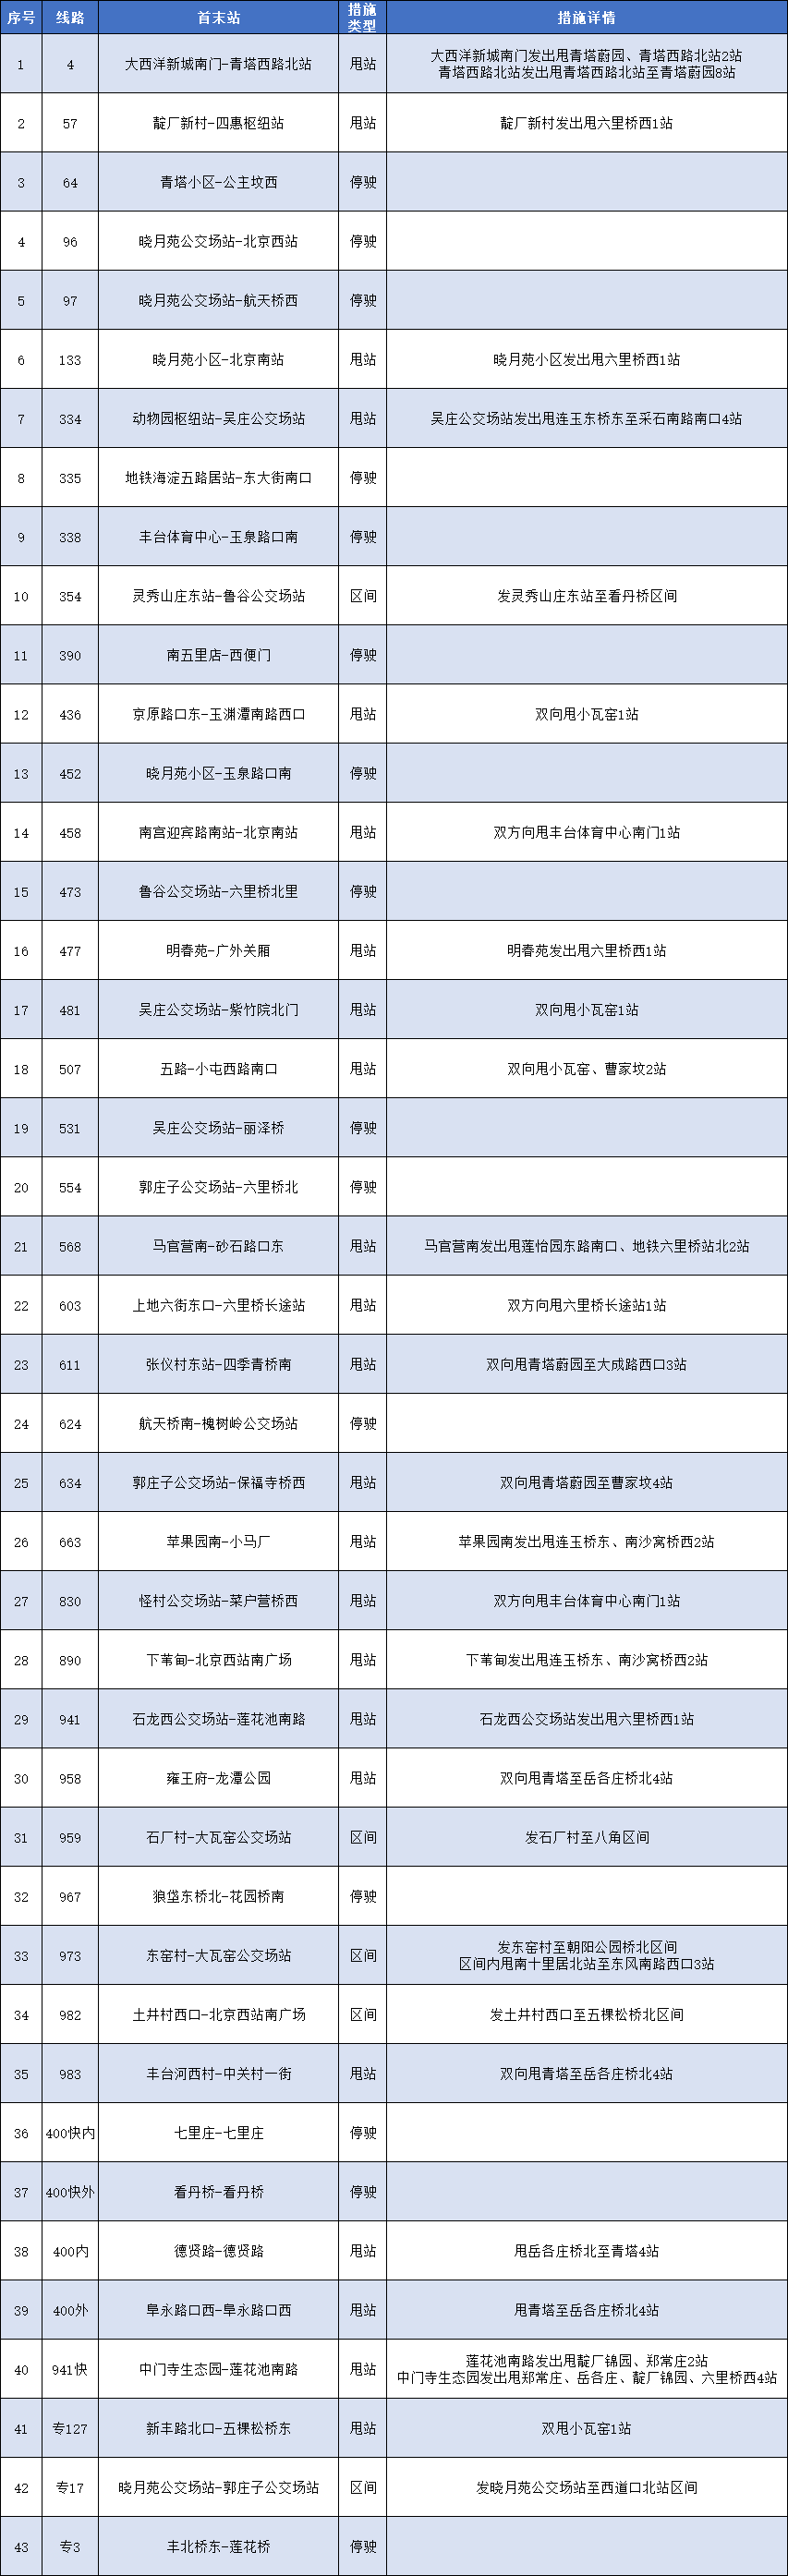 北京岳各庄和青塔等区域周边43条公交线路采取临时调度措施